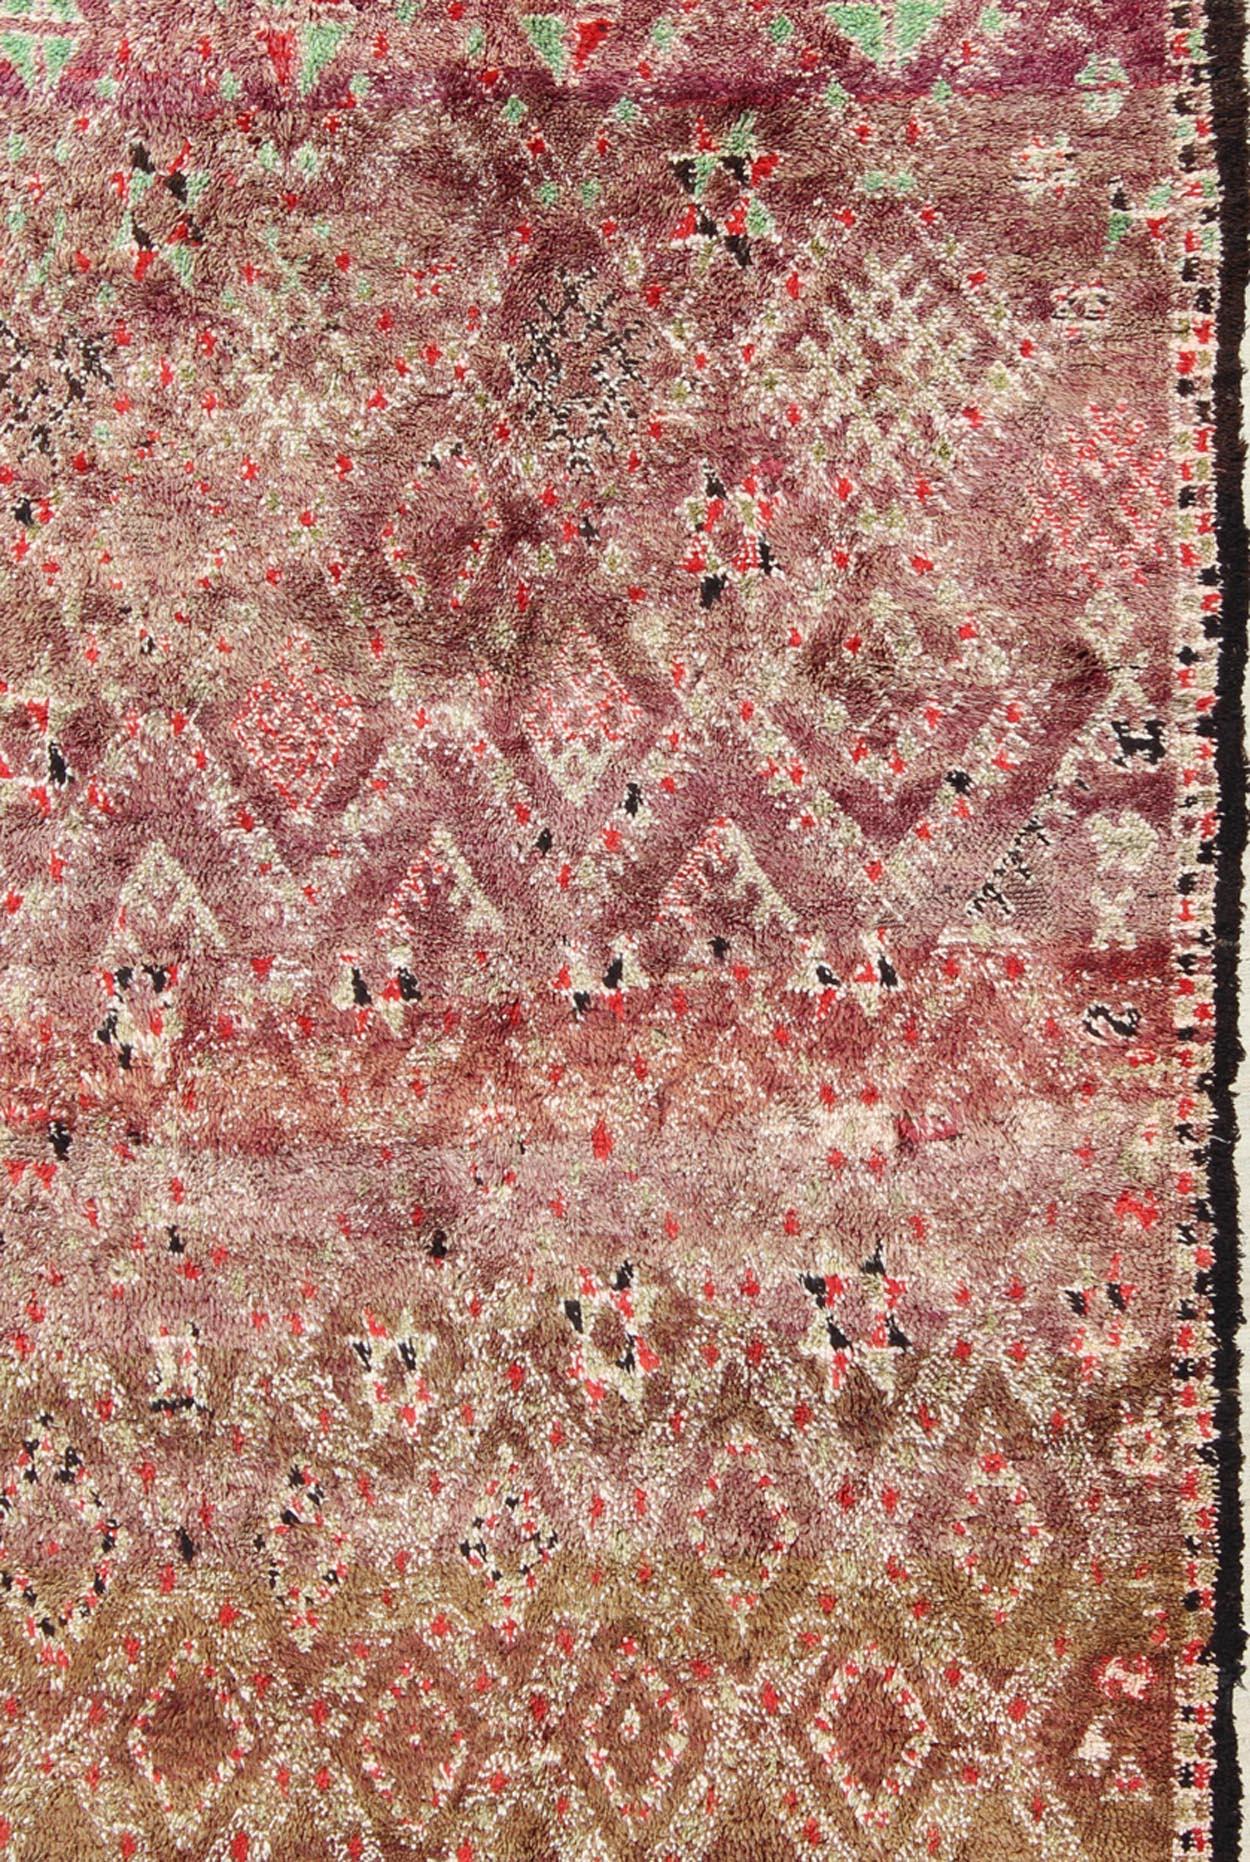 Grüner, lavendelfarbener, brauner, roter, blauer Hintergrund Marokkanischer Vintage-Teppich mit durchgehendem Rautenmuster, Teppich lcb-136641, Herkunftsland / Typ: Marokko / Tribal, etwa Mitte des 20. Jahrhunderts

Diese große Vintage